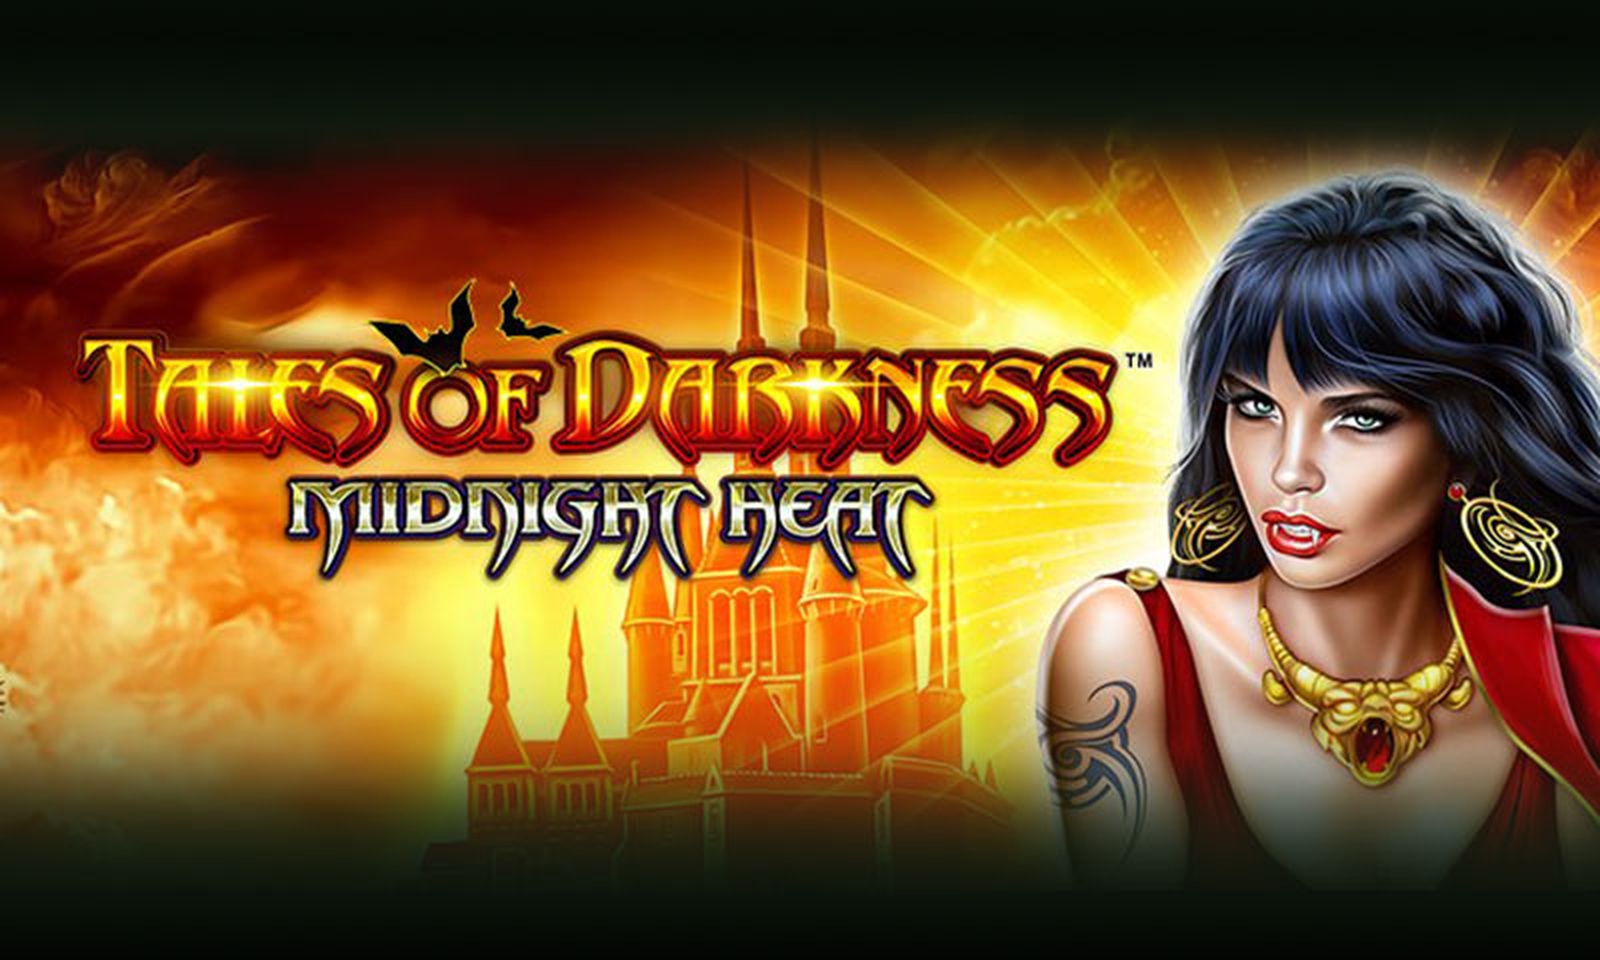 Tales of Darkness Midnight Heat demo